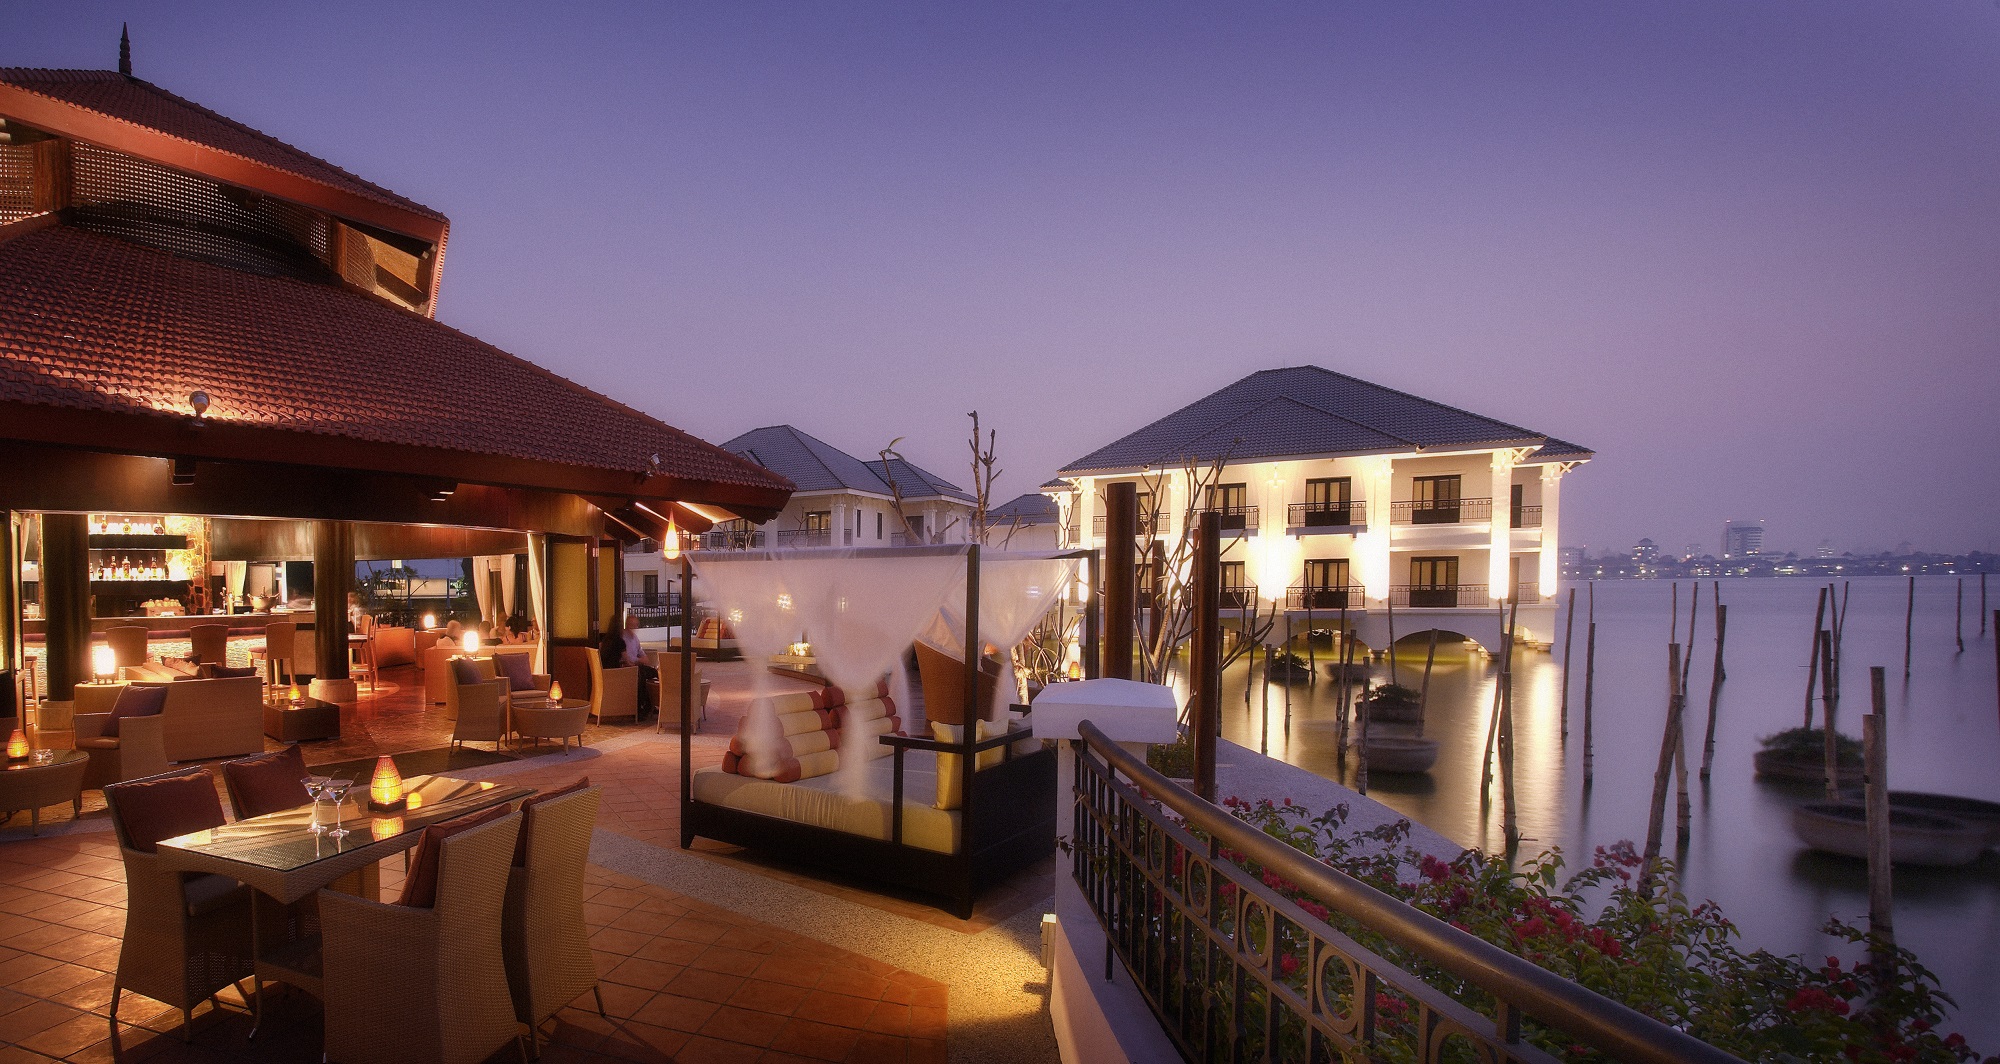 Sunset Bar của khách sạn InterContinental Hanoi Westlake được xây hoàn toàn trên mặt nước Hồ Tây thơ mộng, được mệnh danh là nơi ngắm hoàng hôn đẹp nhất.